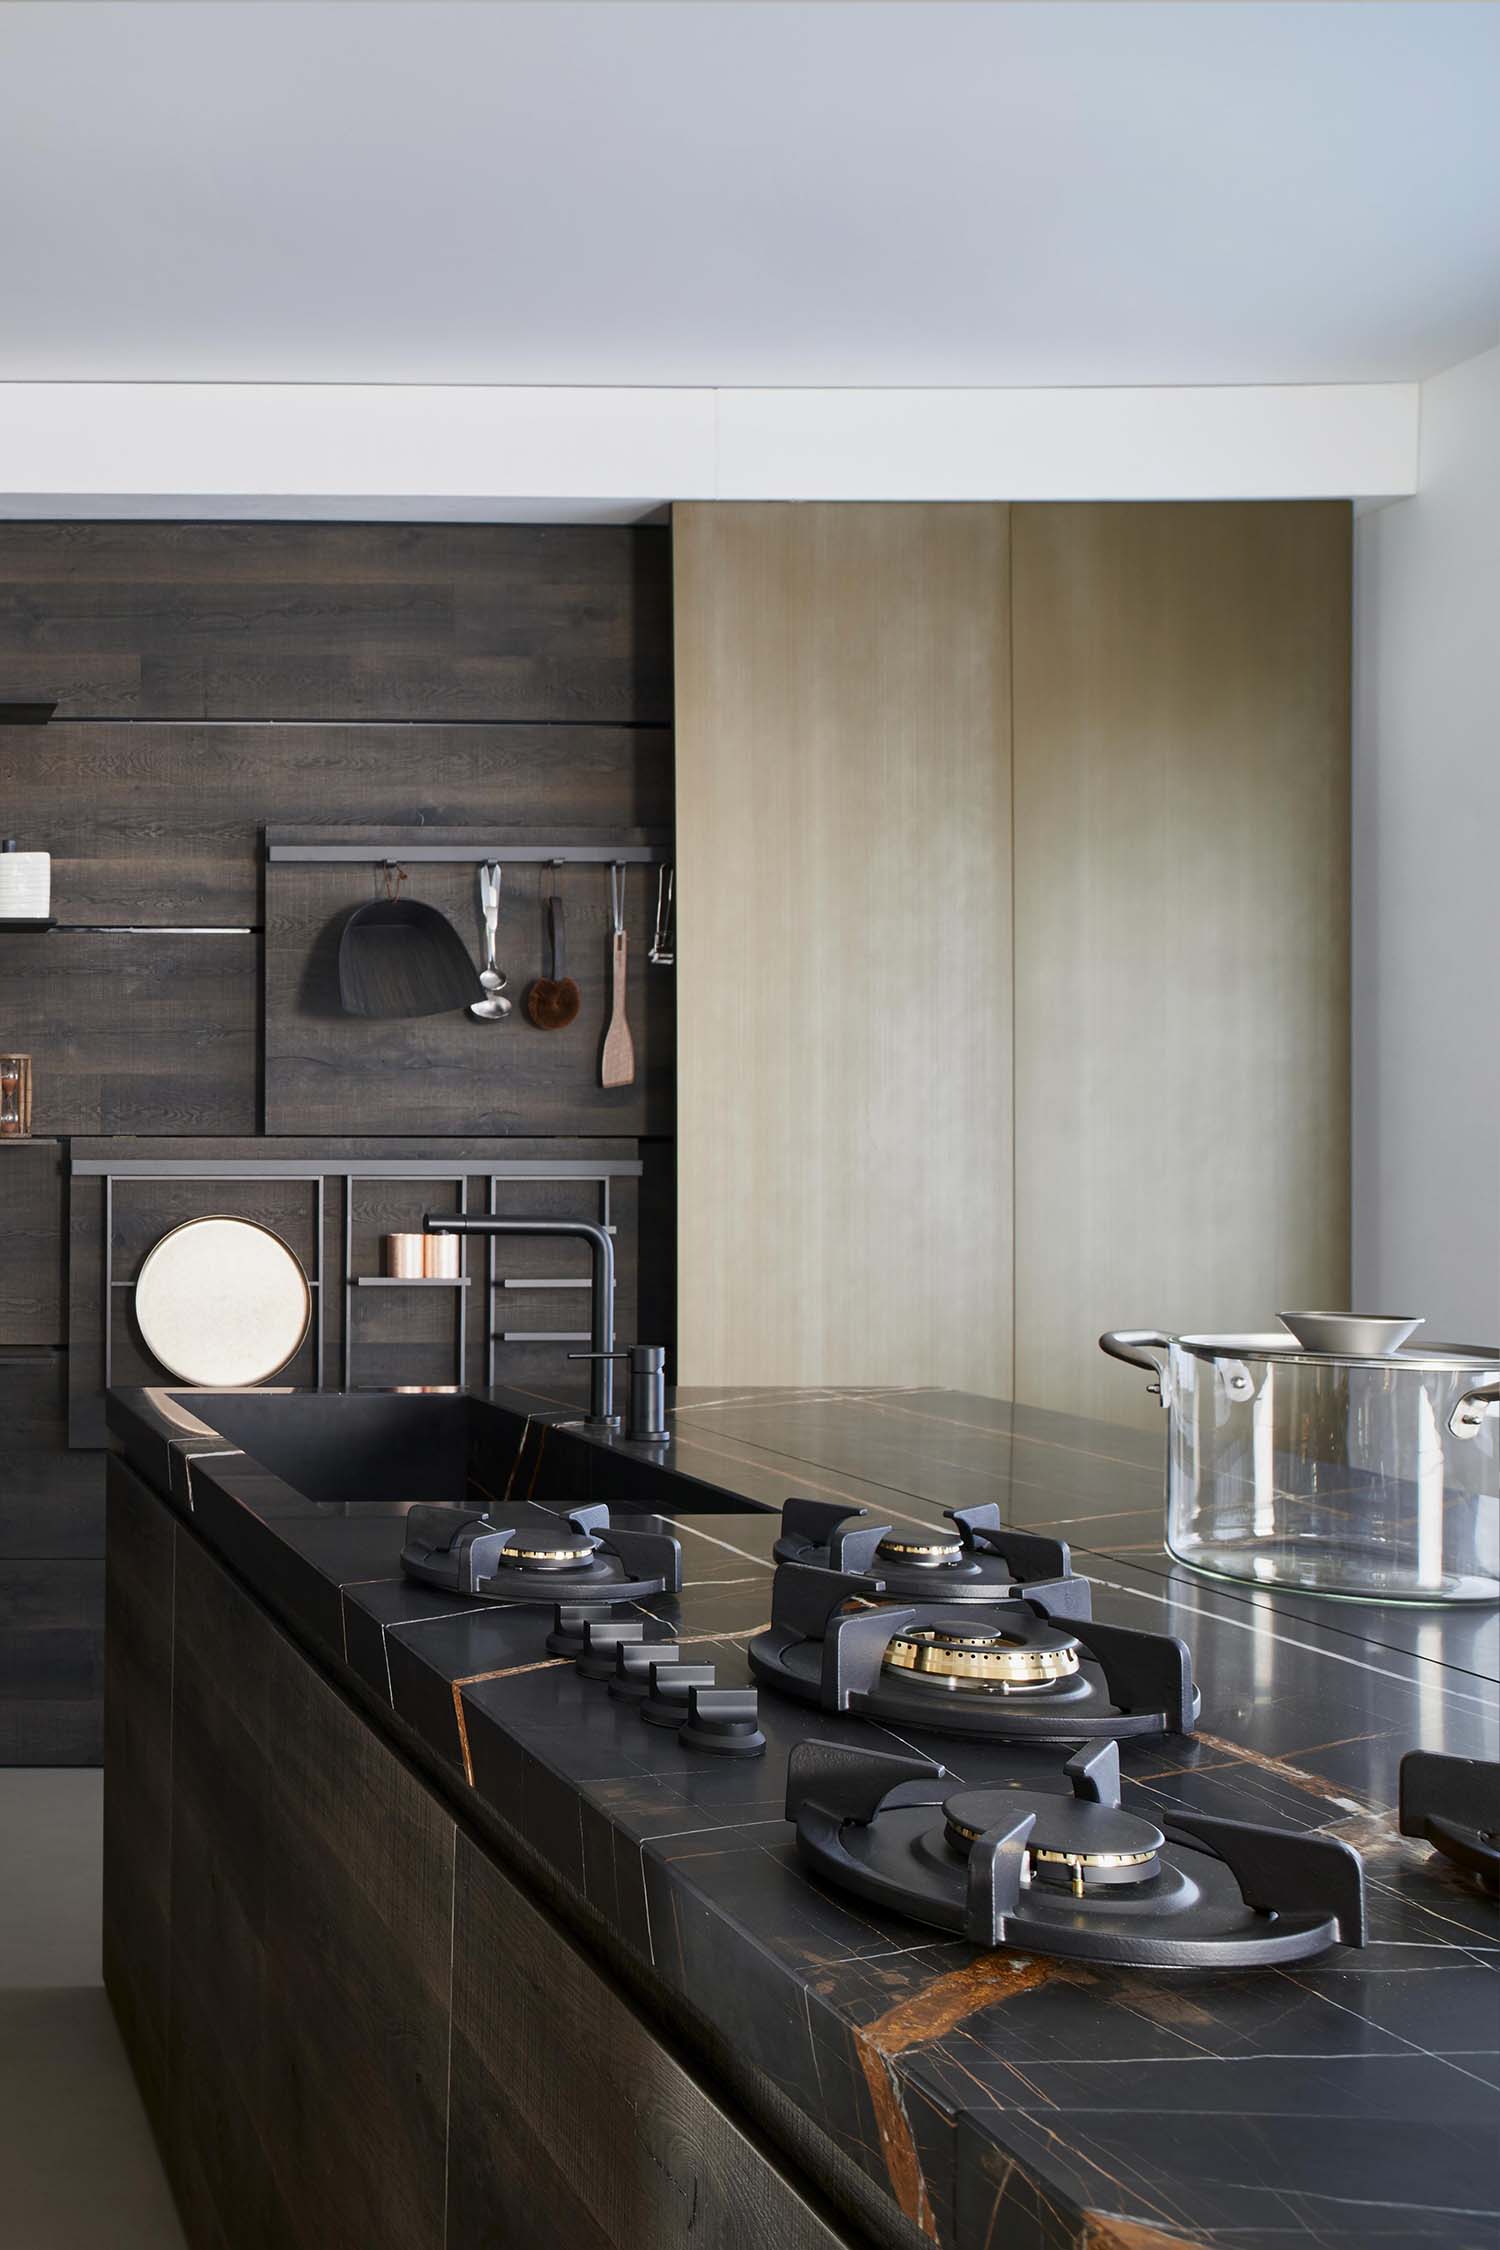 Luxury kitchens in Notting Hill, London. Kitchen design by Krieder studio UK